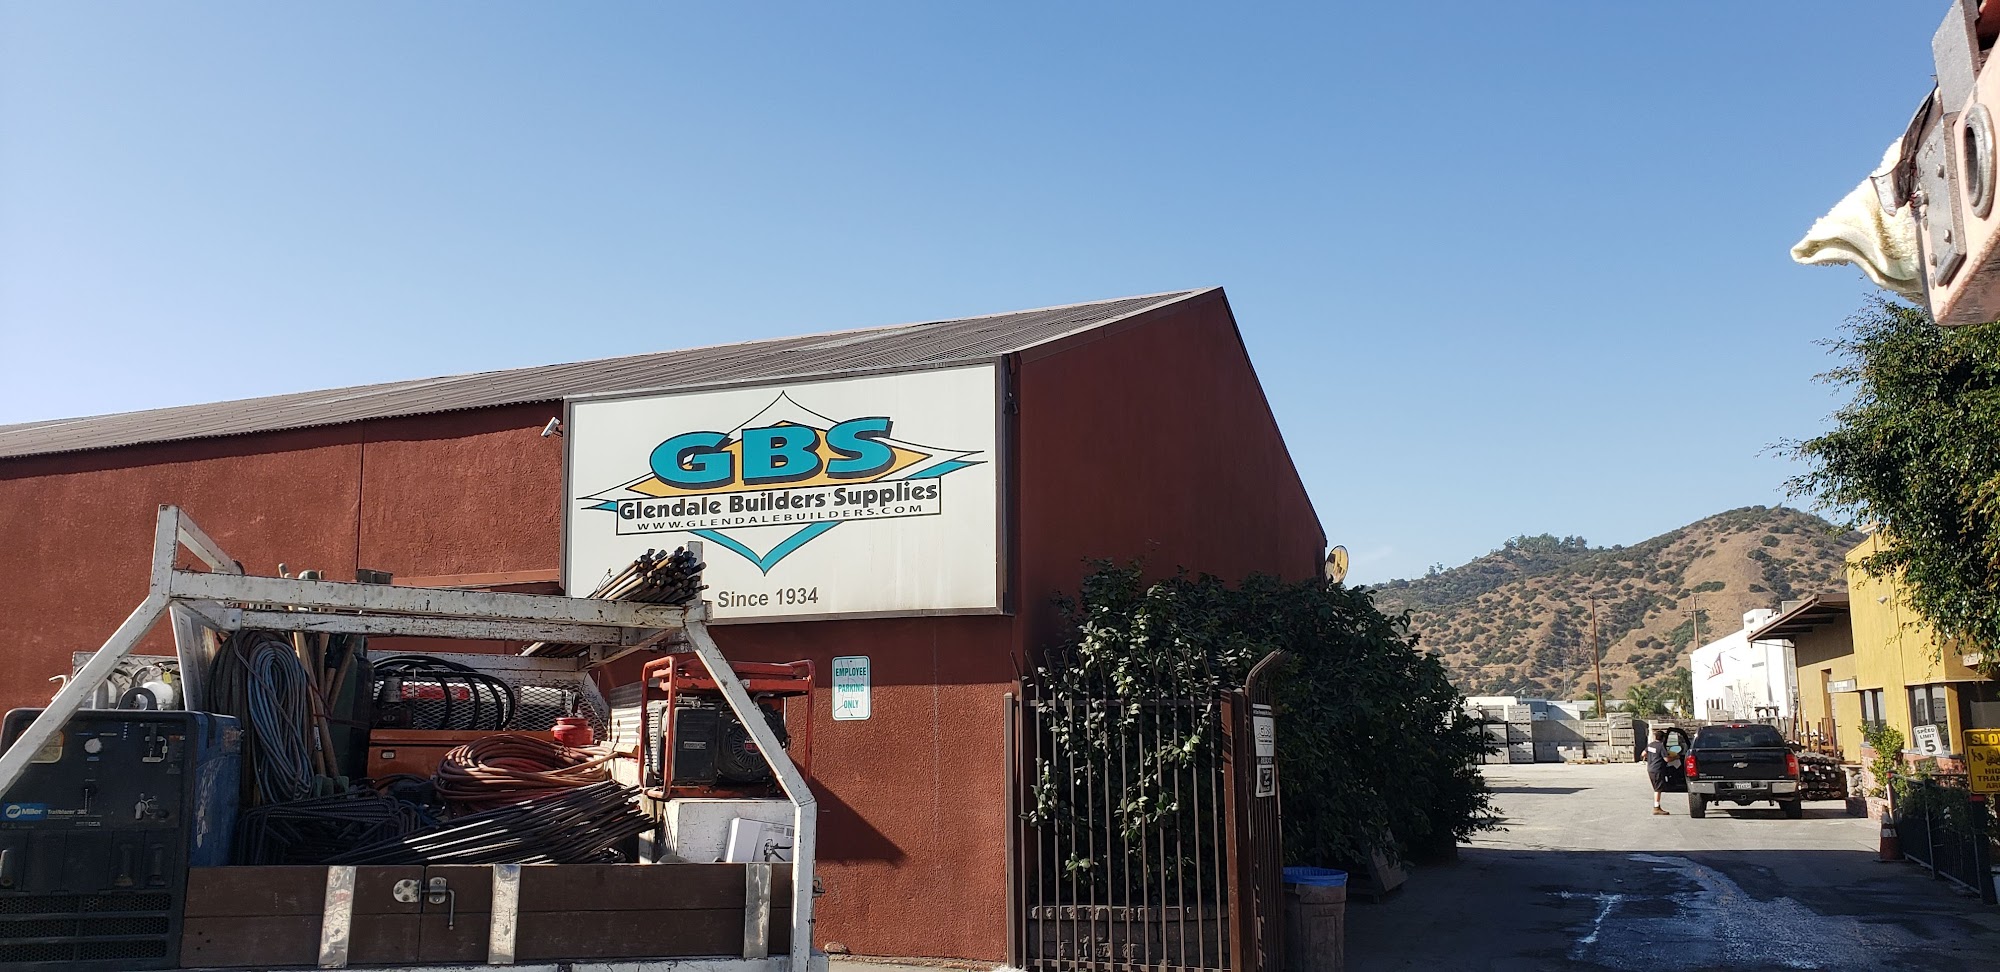 Glendale Builders Supplies